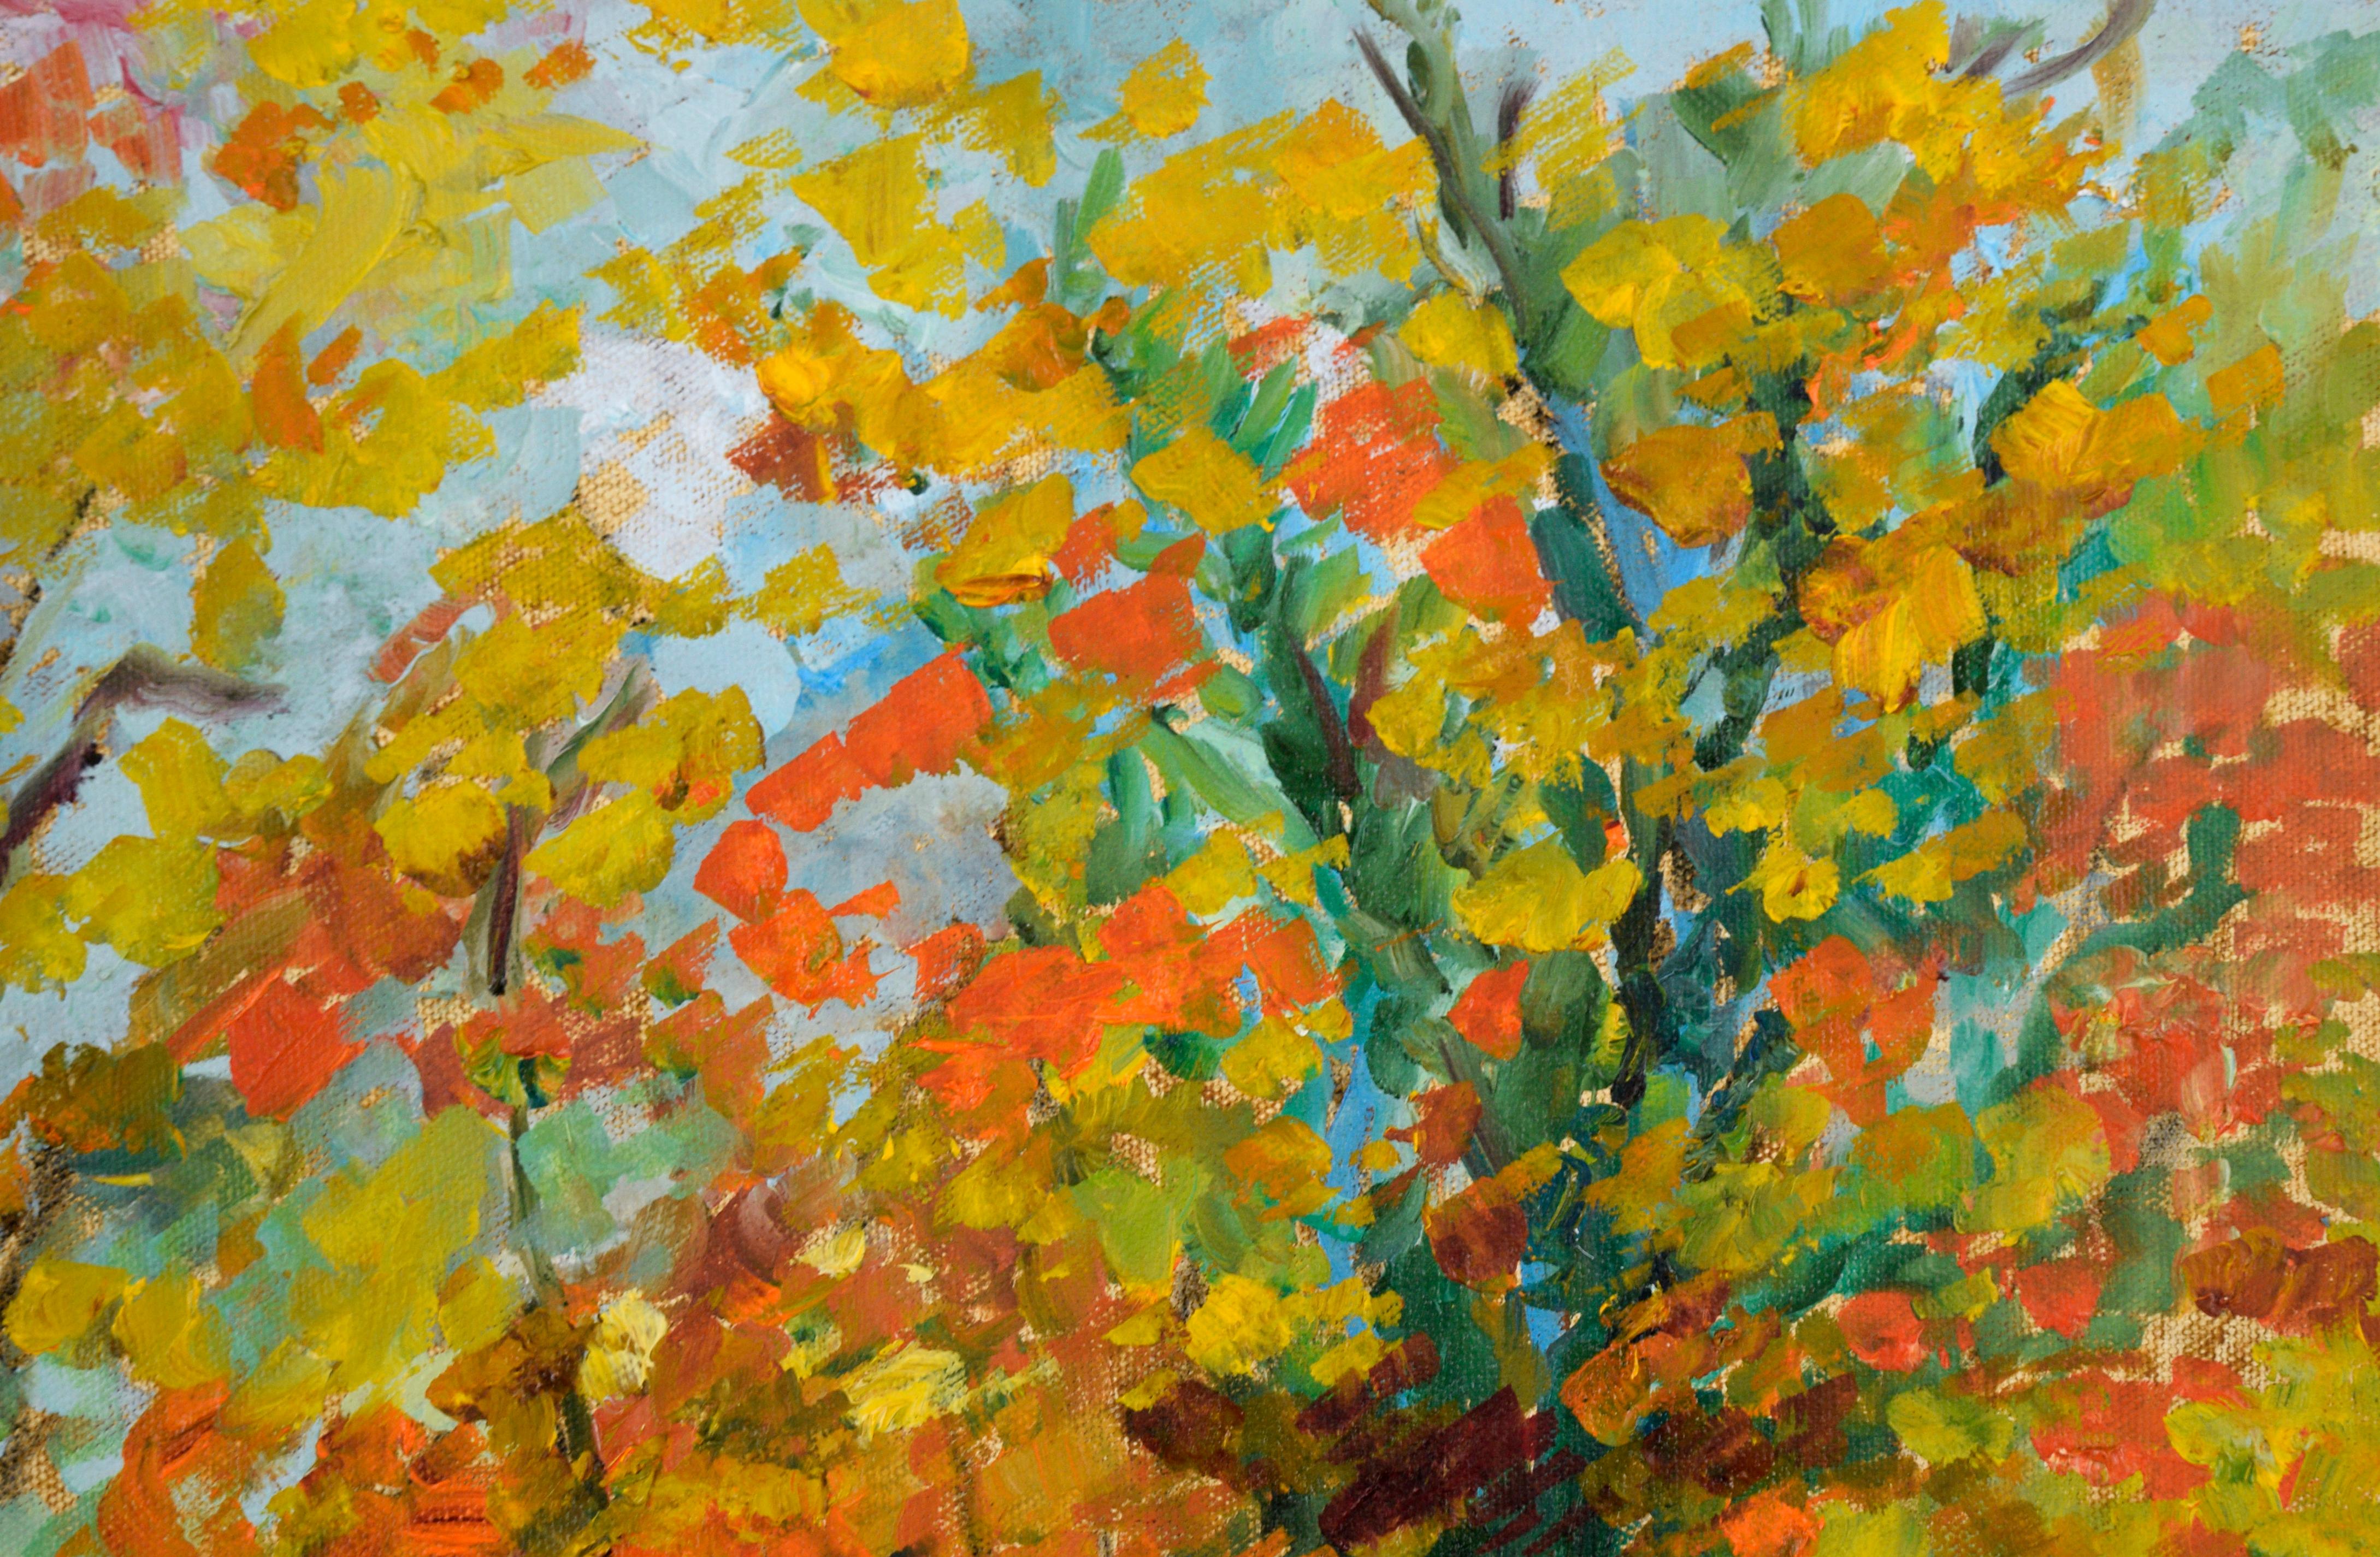 Stream in the Forest in Autumn - Paysage en acrylique sur toile - Impressionnisme américain Painting par Unknown